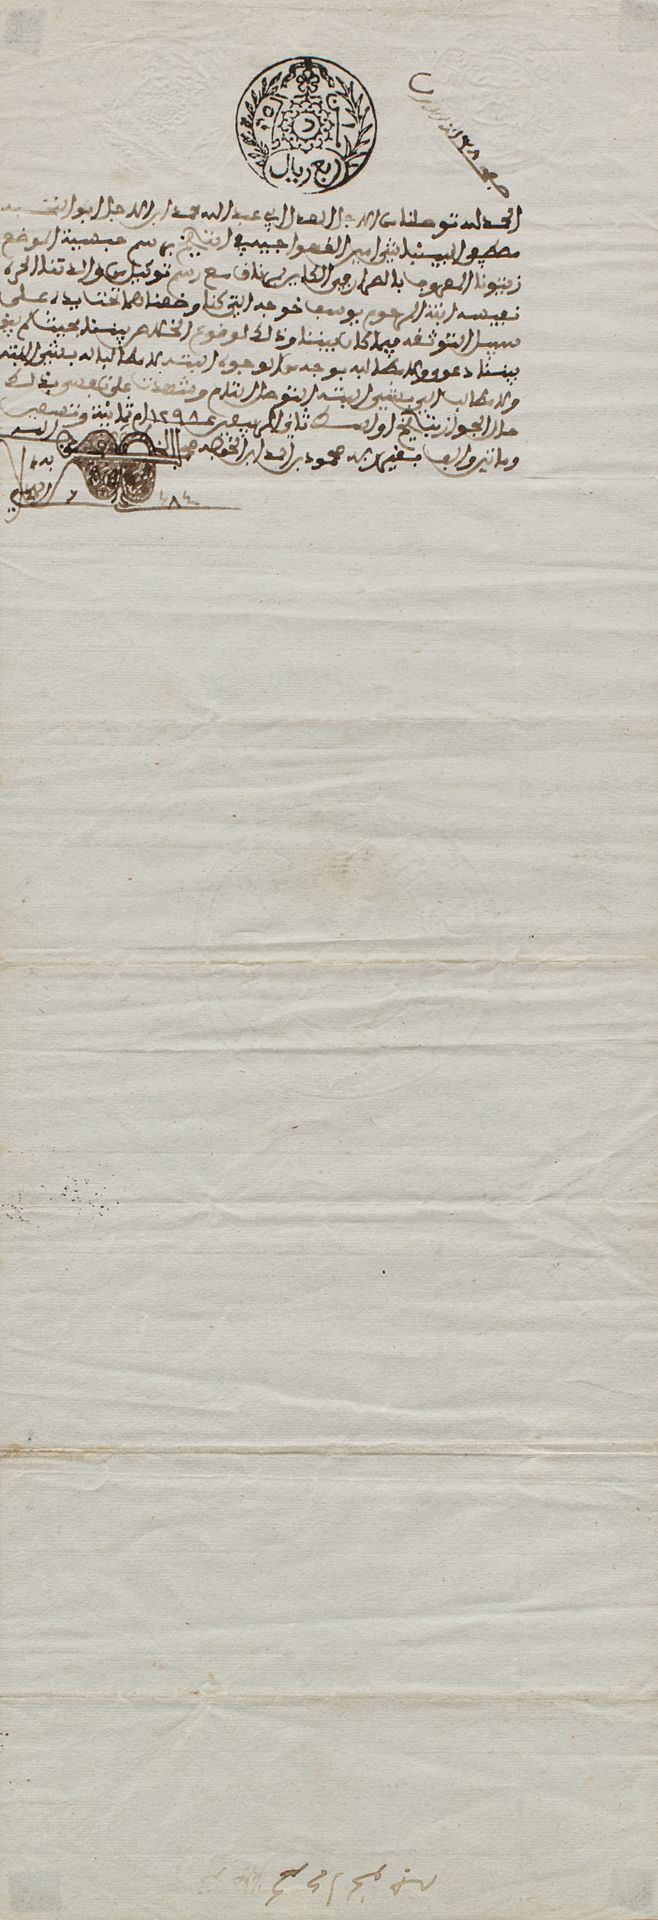 Contrat de vente Tunisie, fin du XIXe siècle

Manuscrit arabe sur papier filigra&hellip;